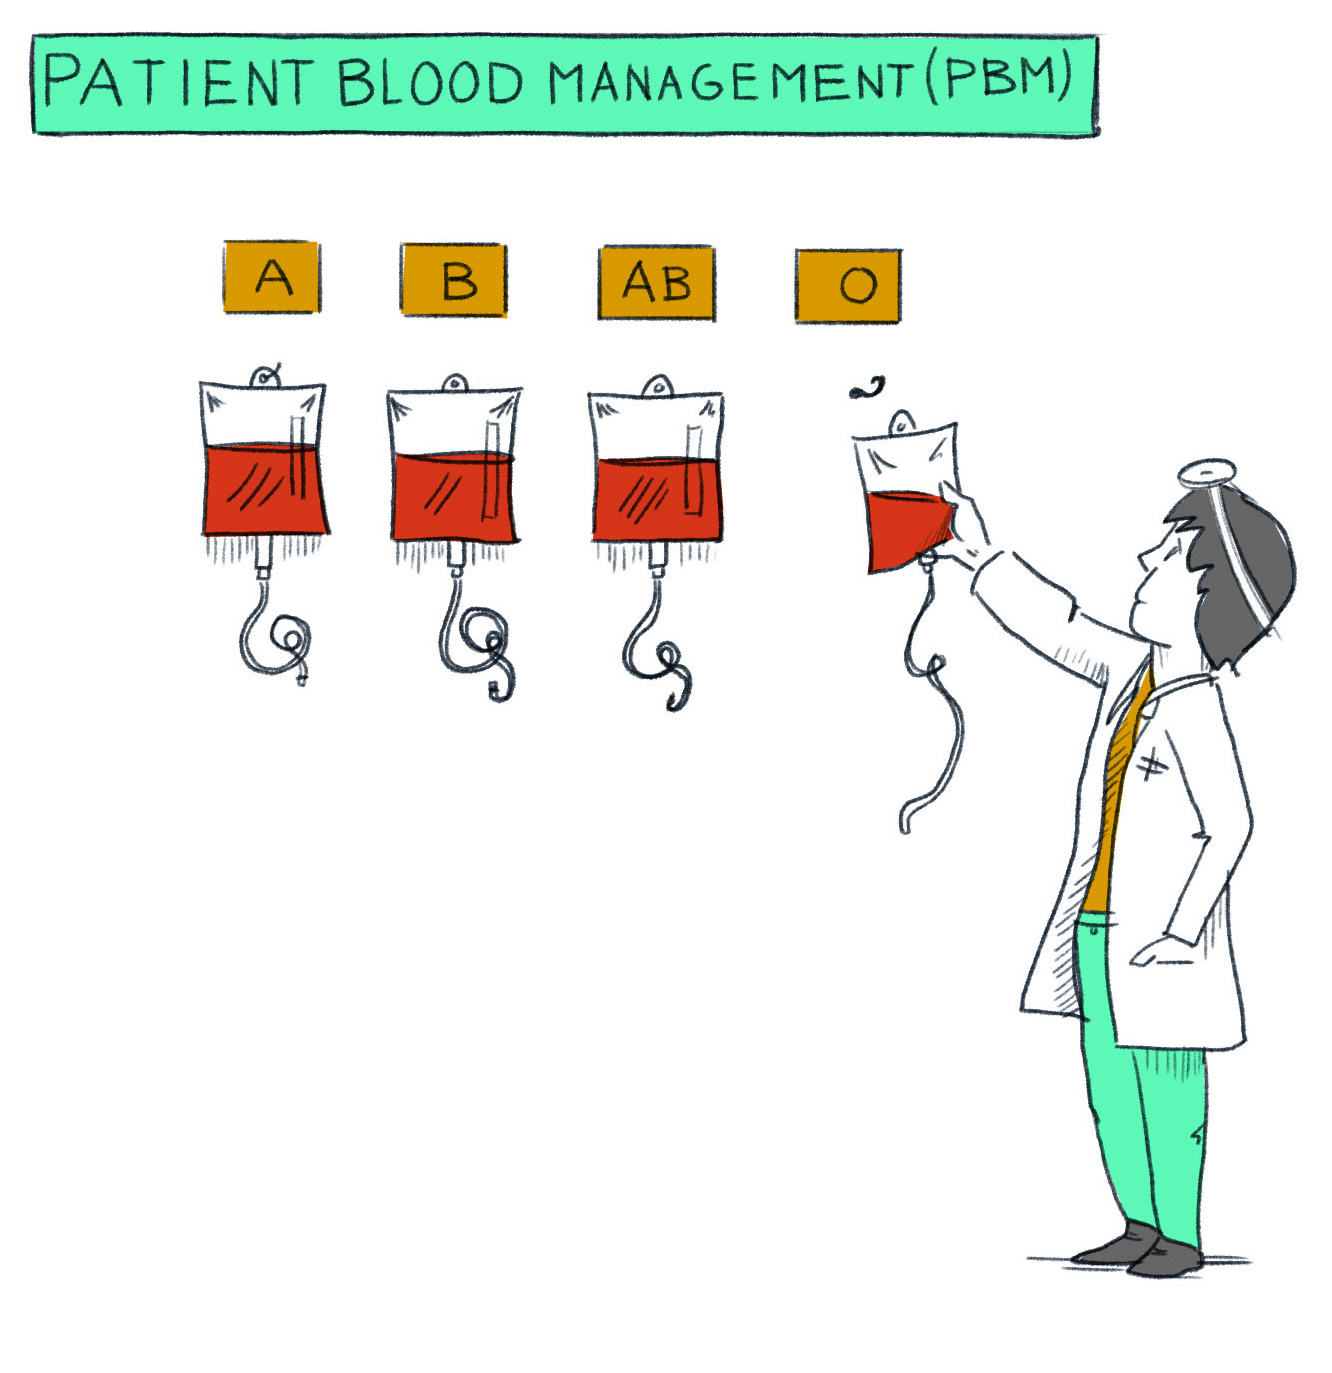 Illustration: Arzt greift zu einer Blutkonserve Blutgruppe 0 an der Wand weitere Blutgruppen A B AB, Patient Blood Management (PBM)